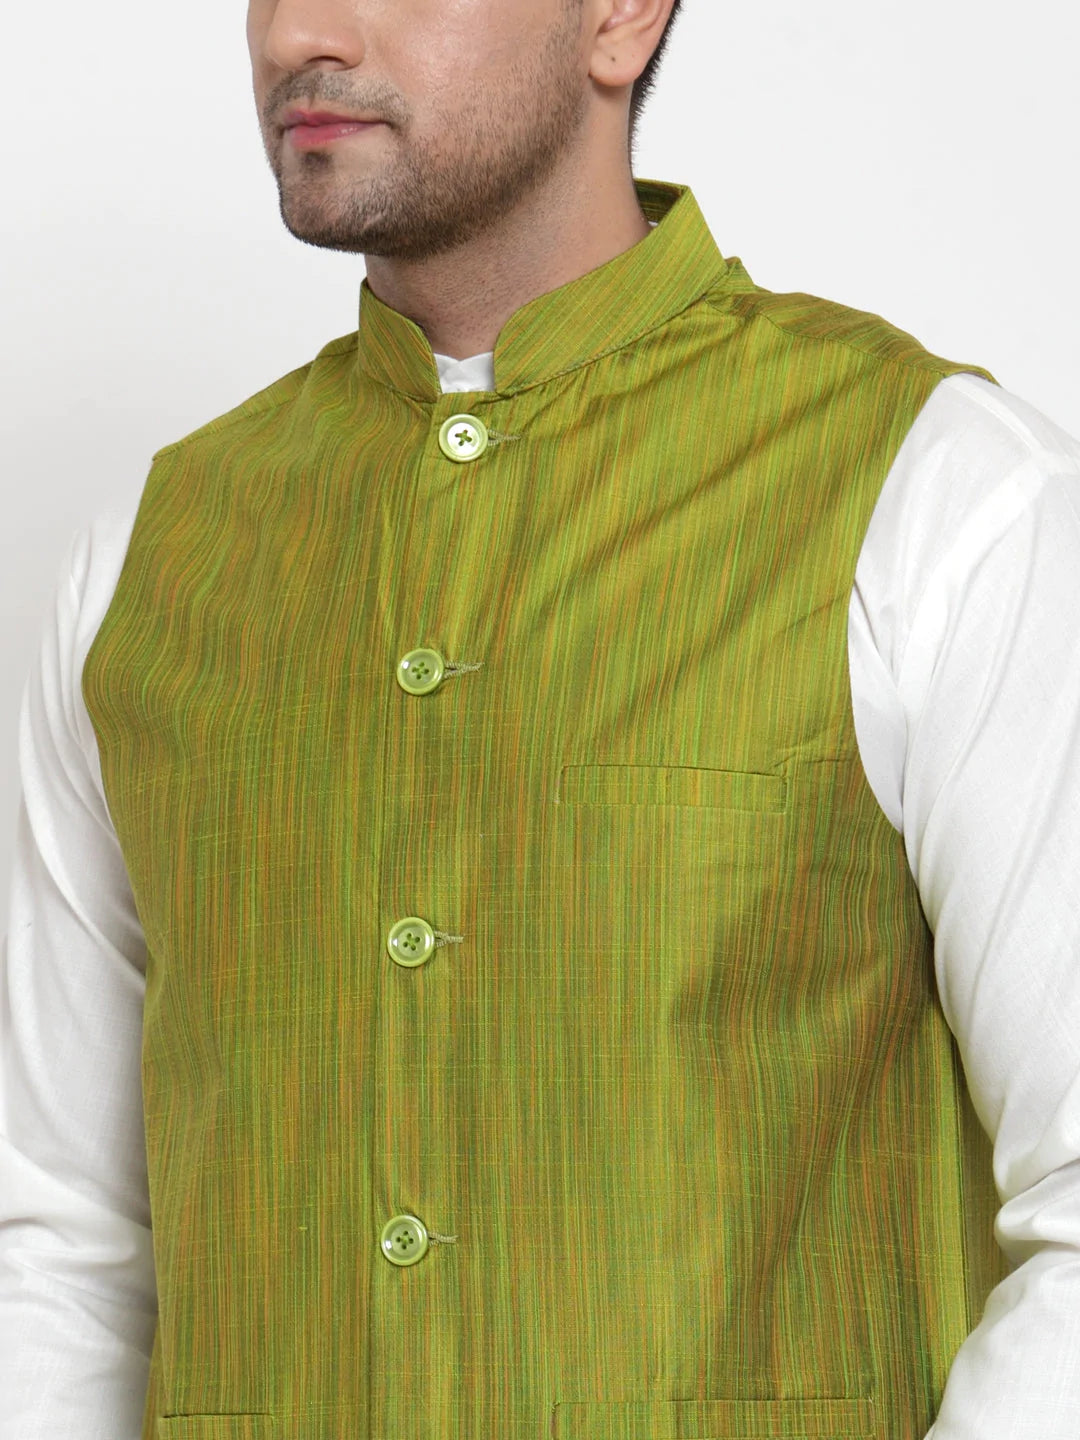 Jompers Men's Green Woven Design Nehru Jacket ( JOWC 4010 Green )